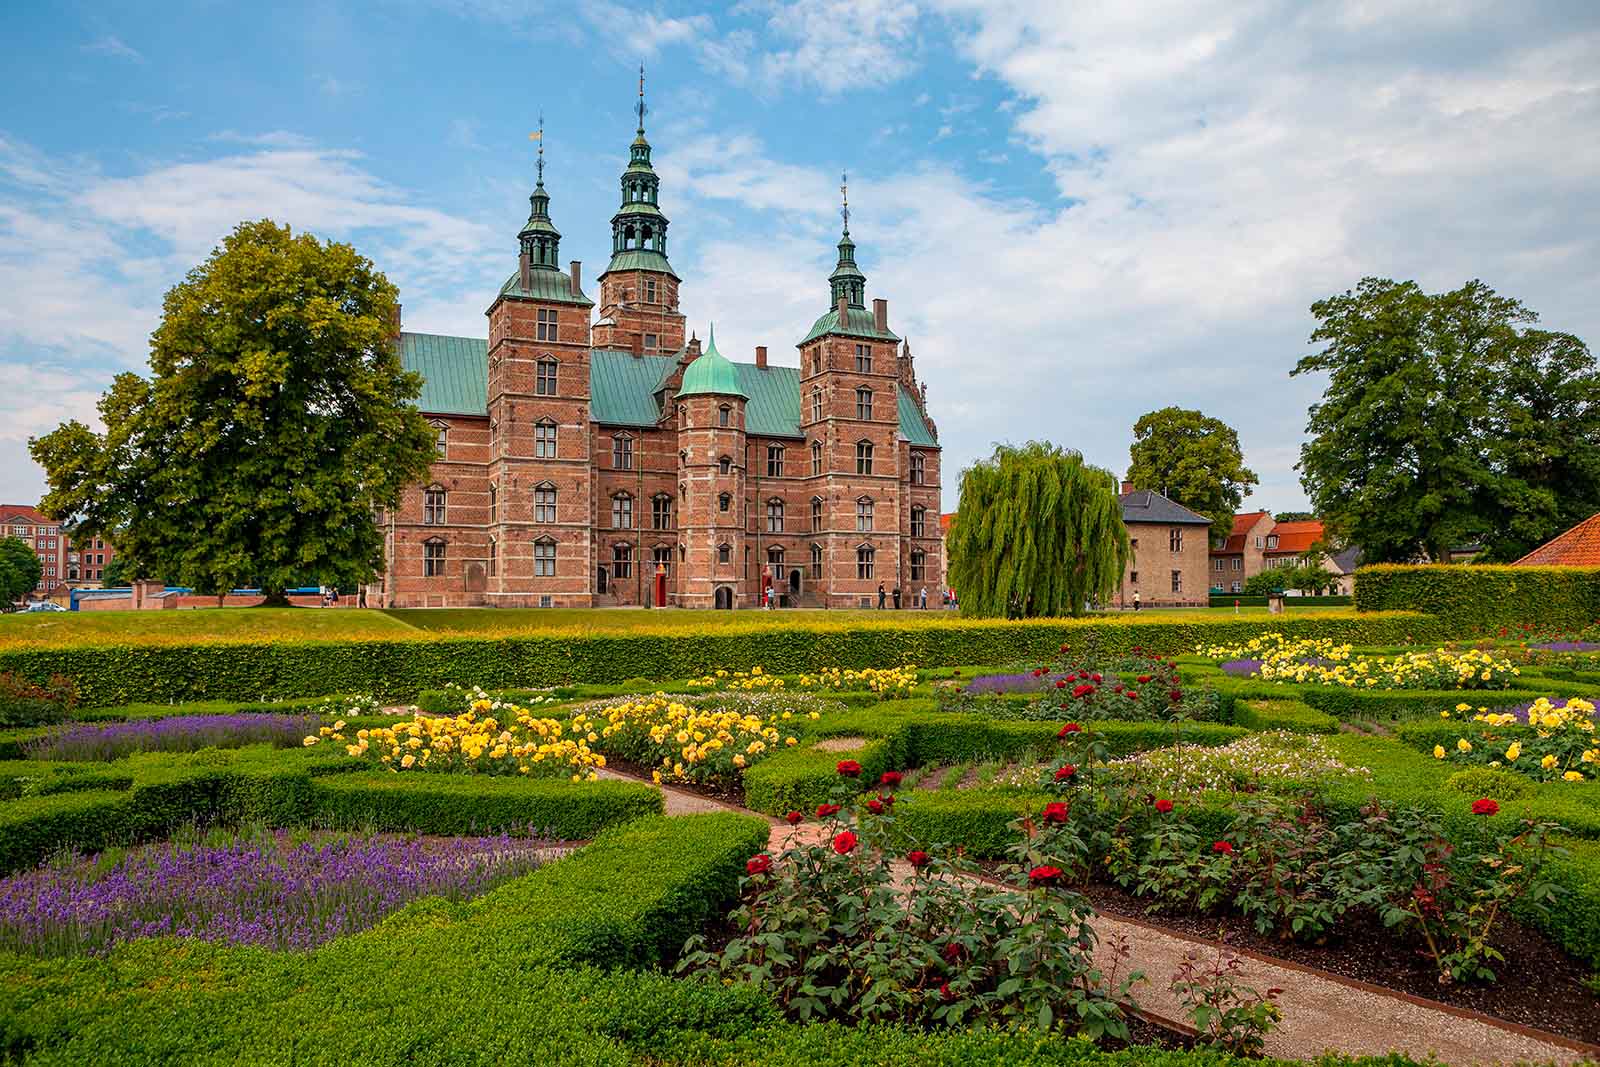 Rosenborg | Et skatkammer af kronjuveler og sjove genstande